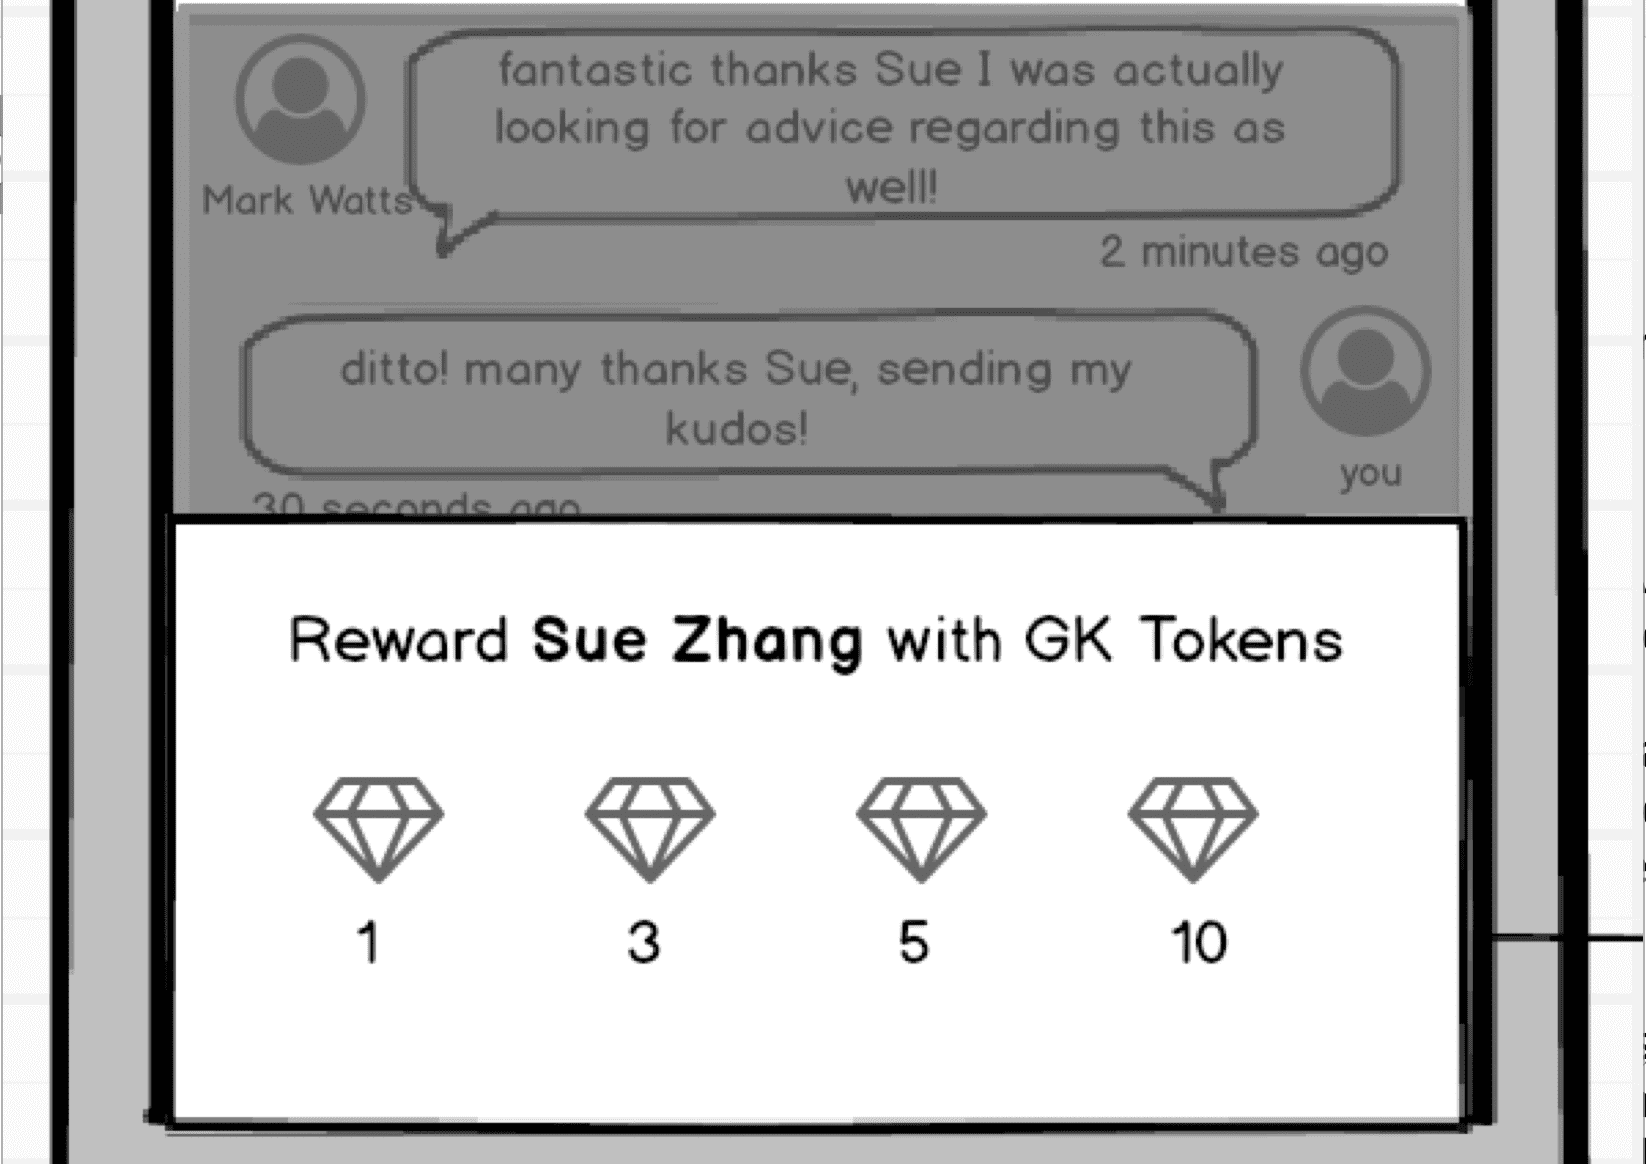 reward system